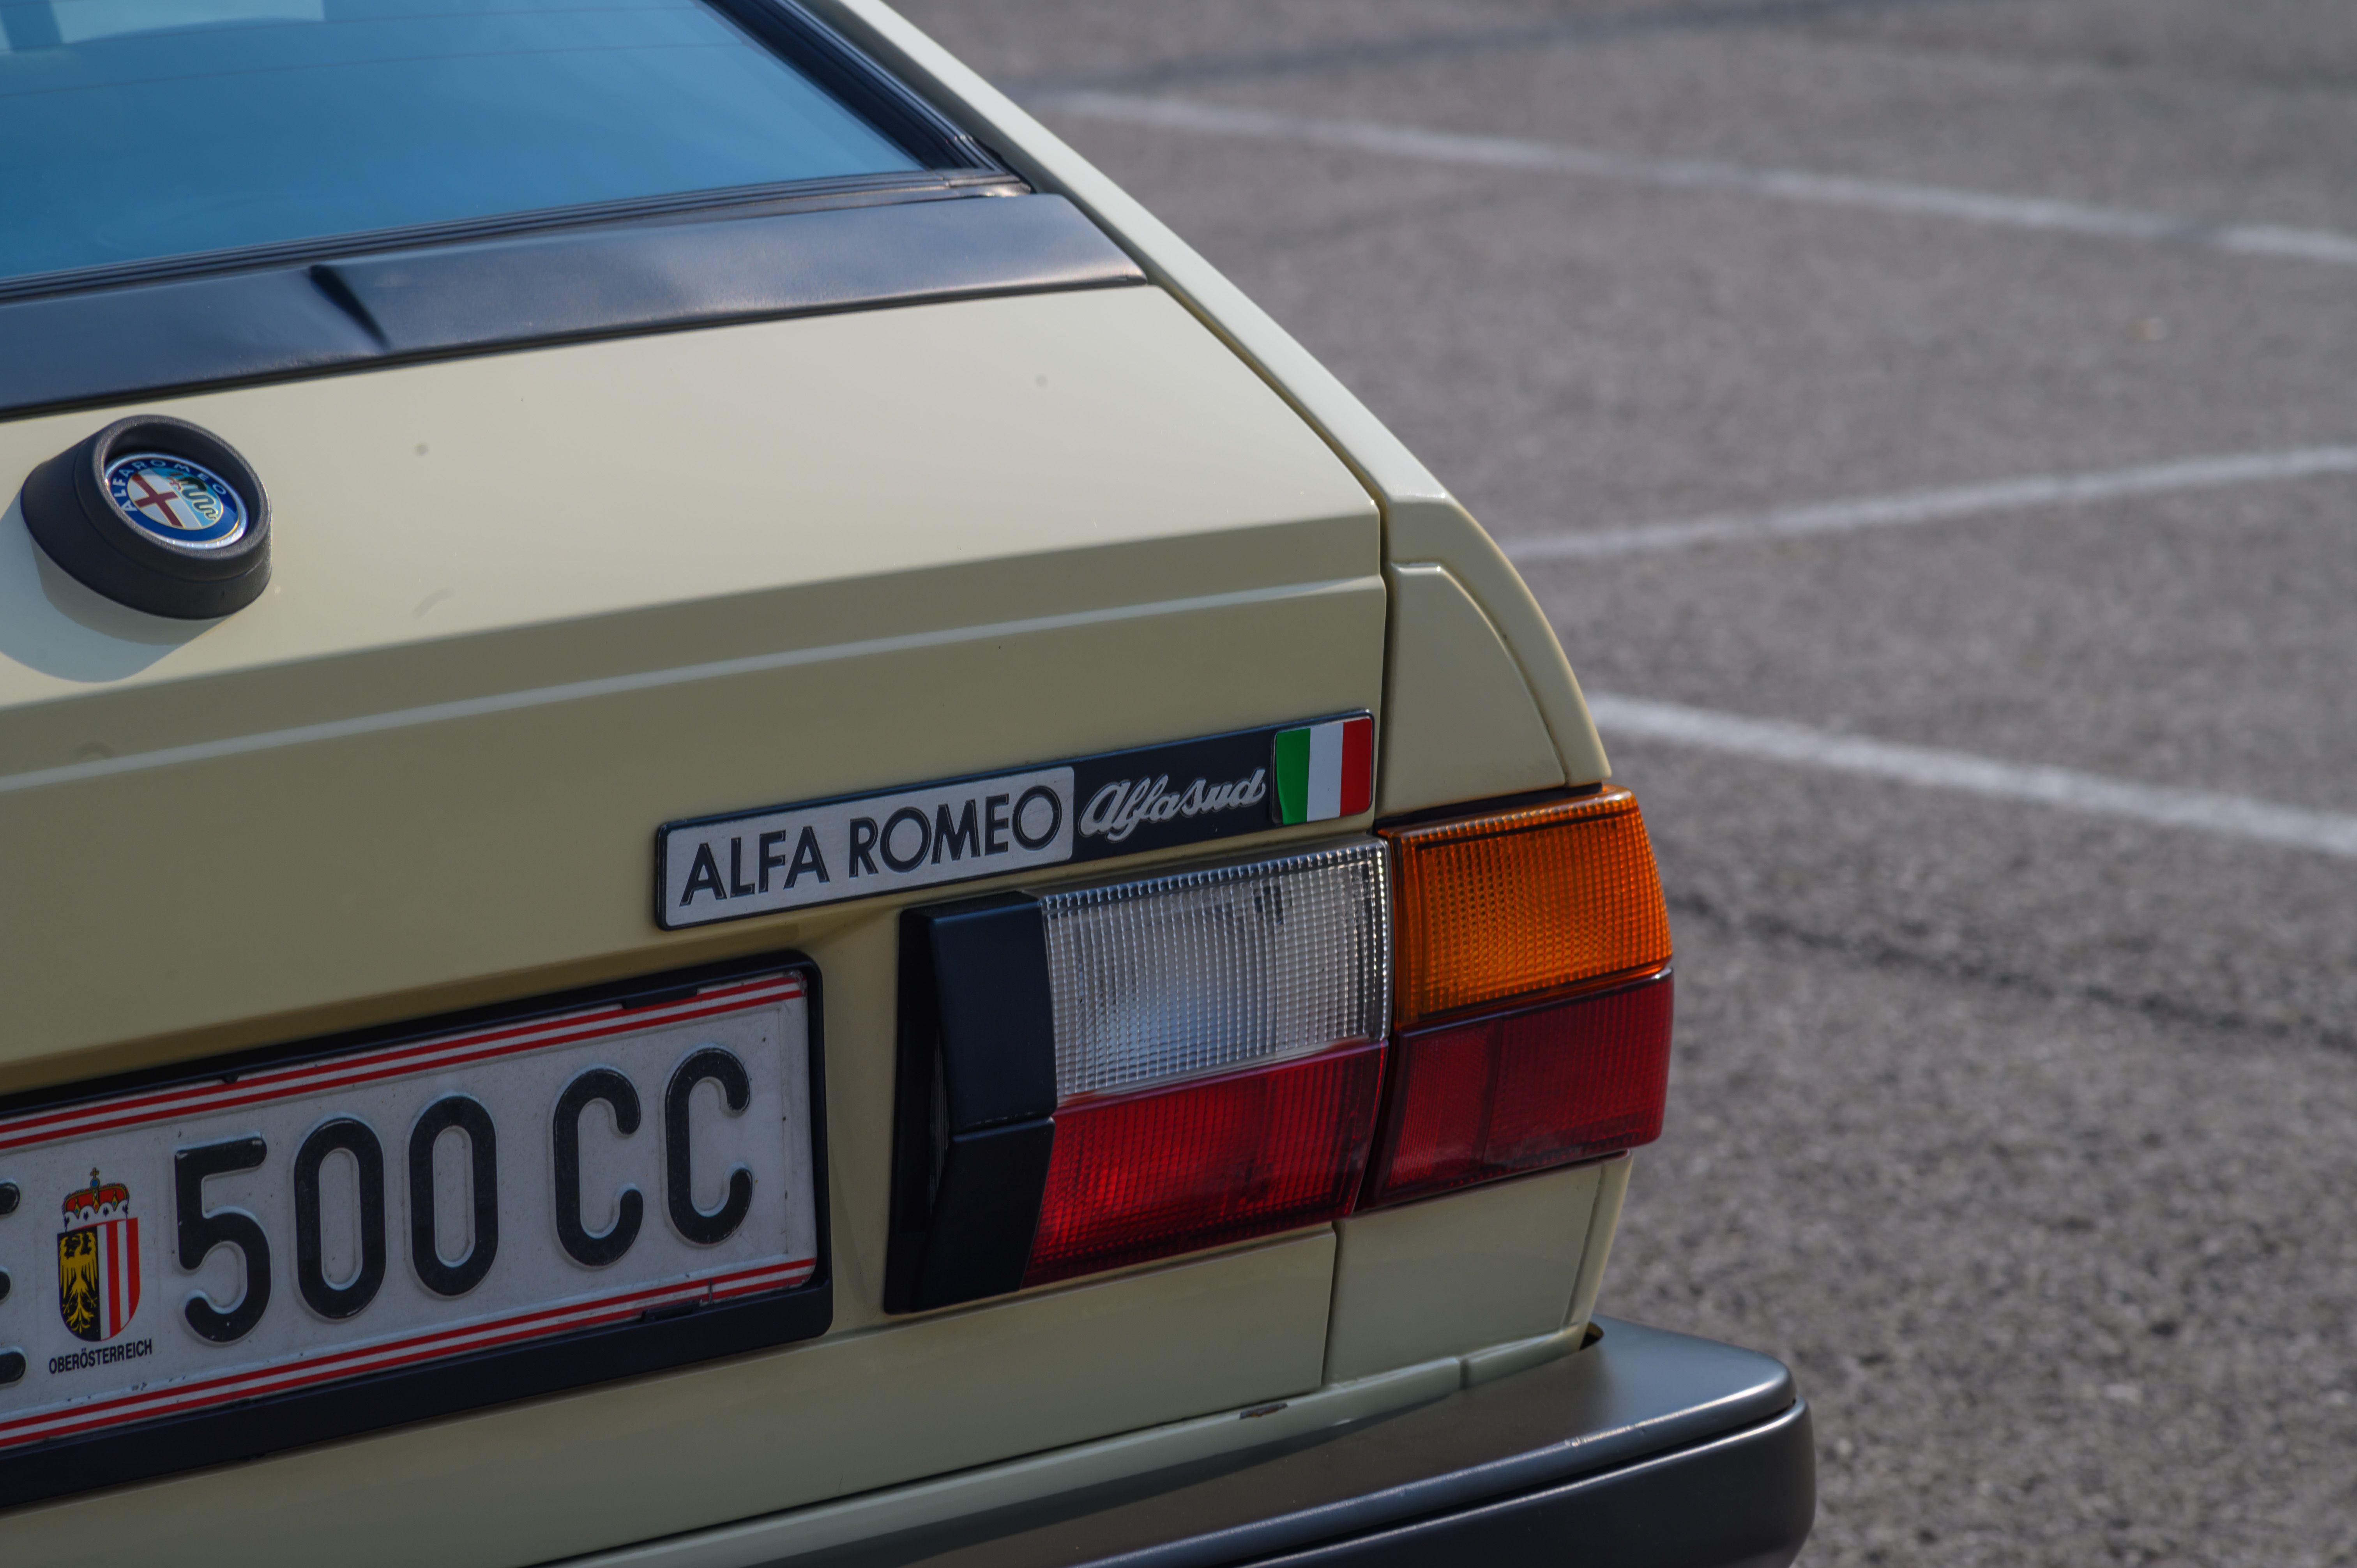 Alfa Romeo Alfasud